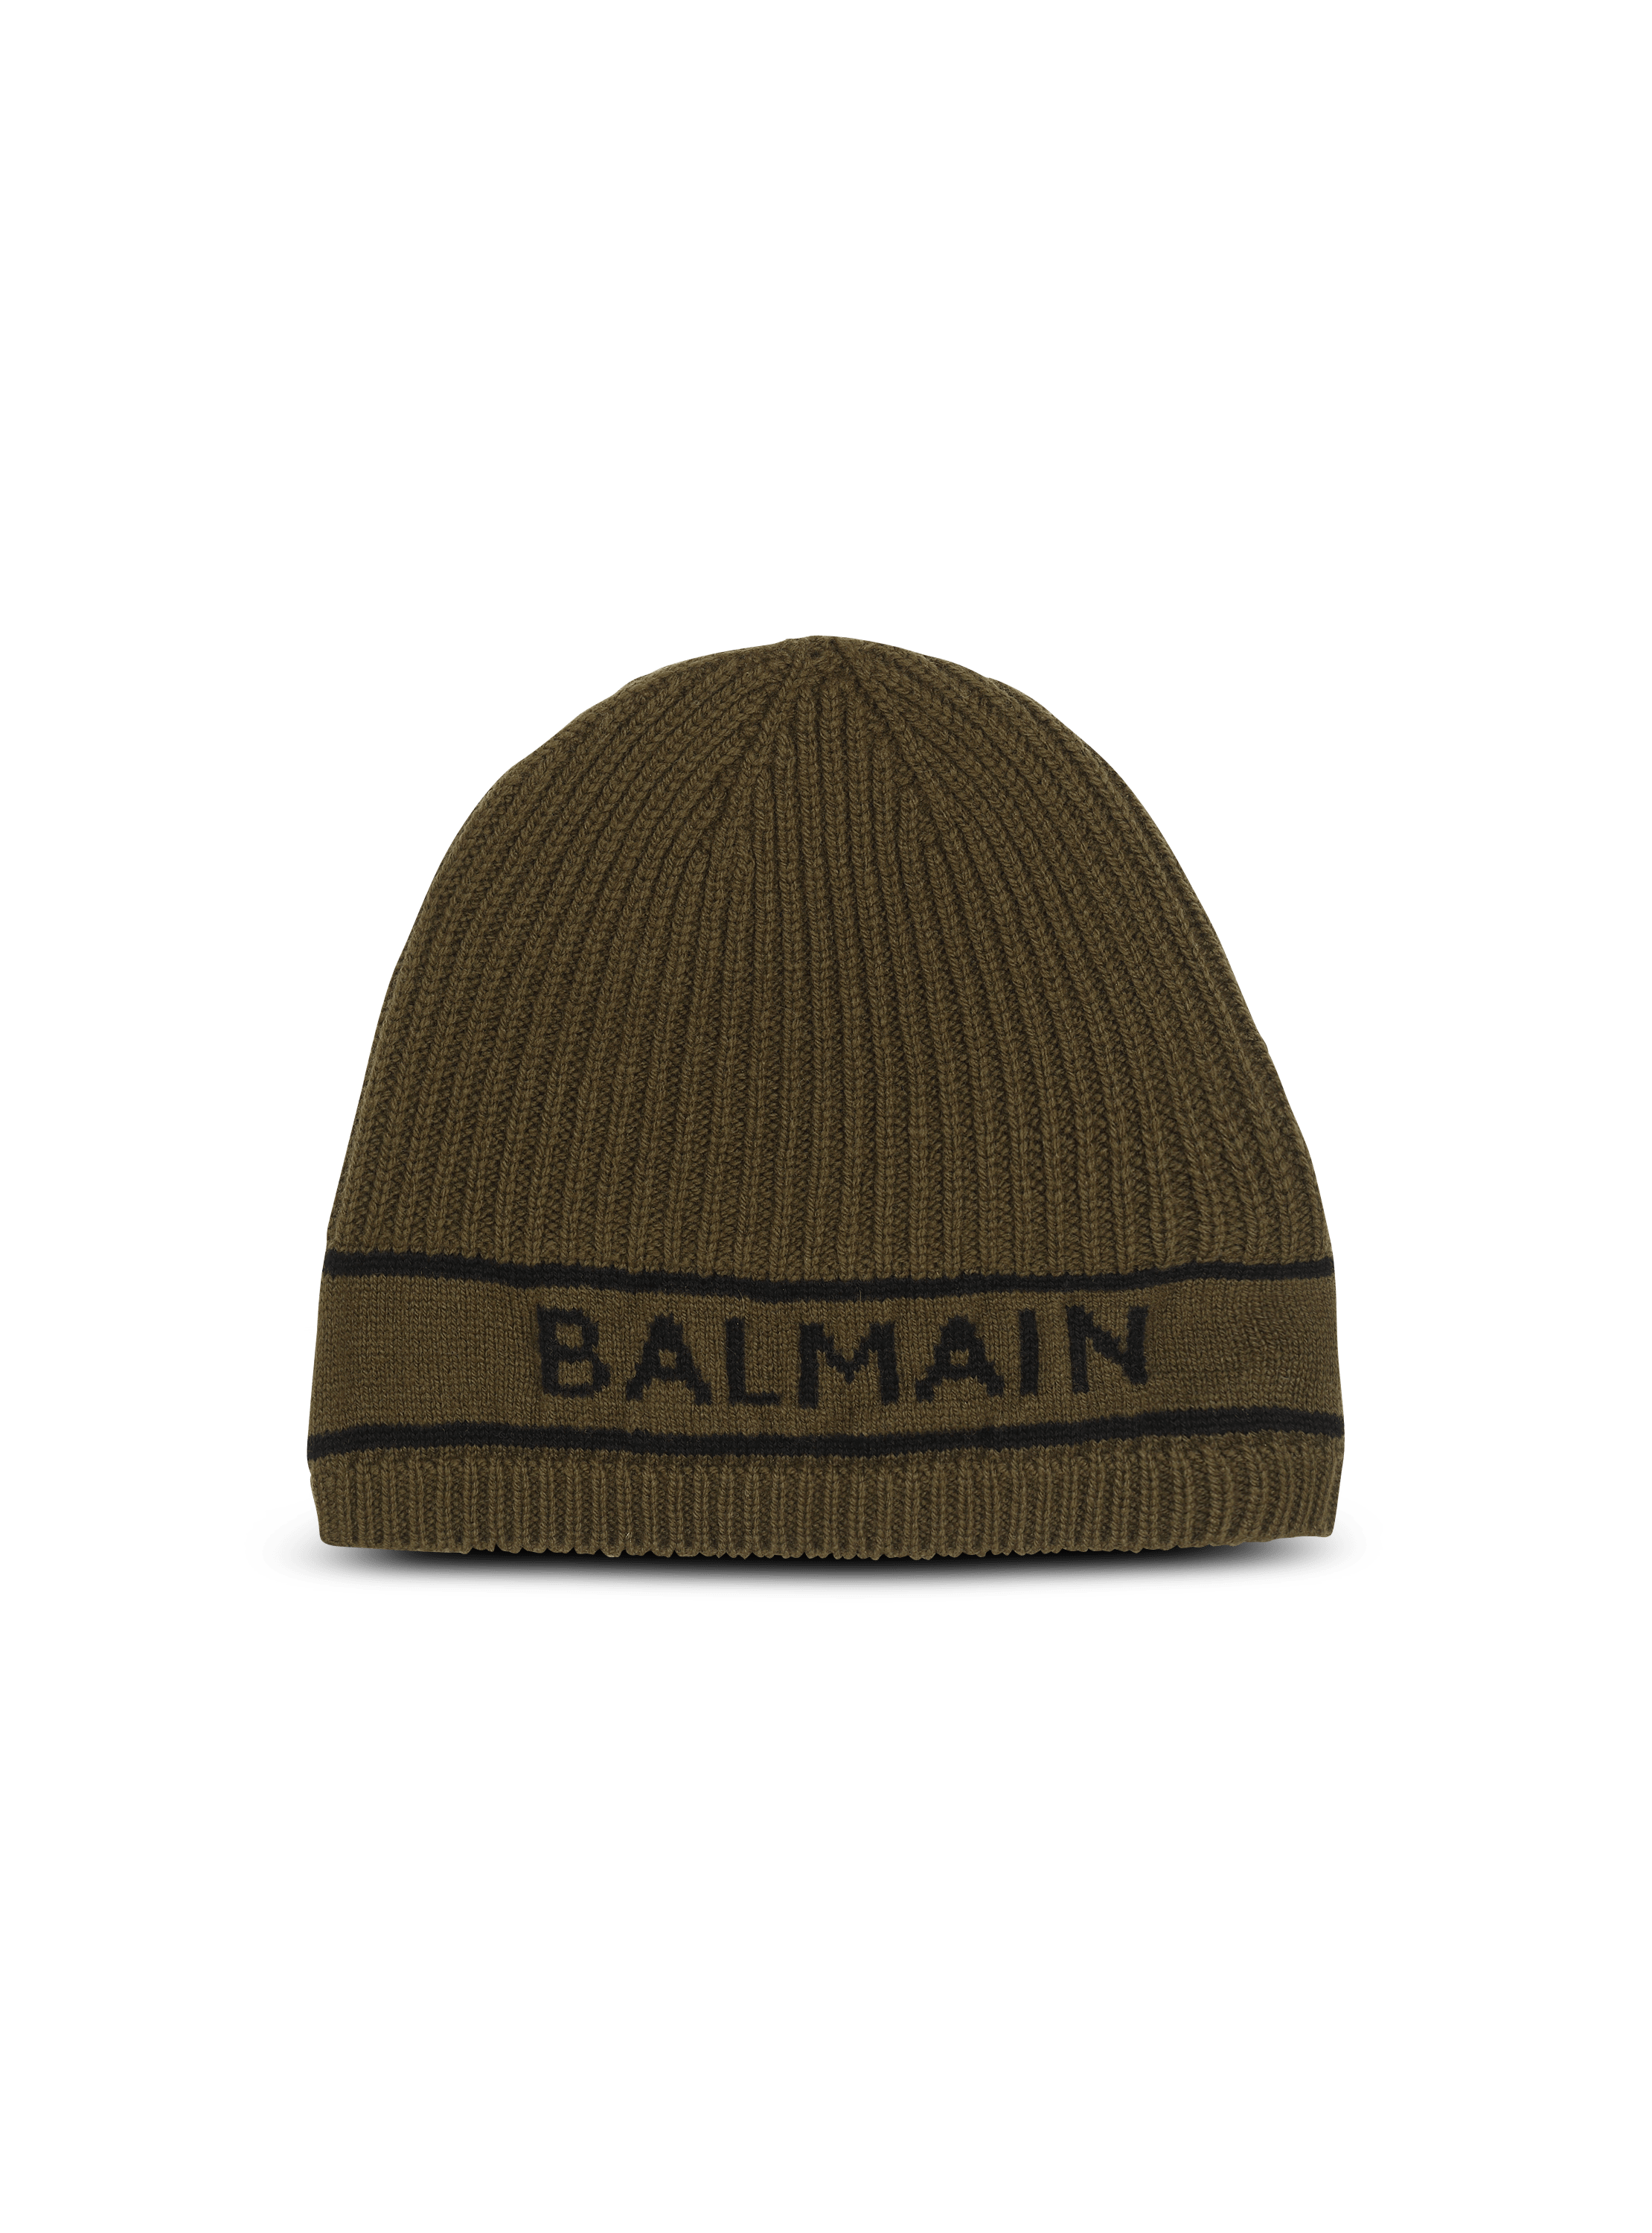 Berretto in lana ricamato con logo Balmain